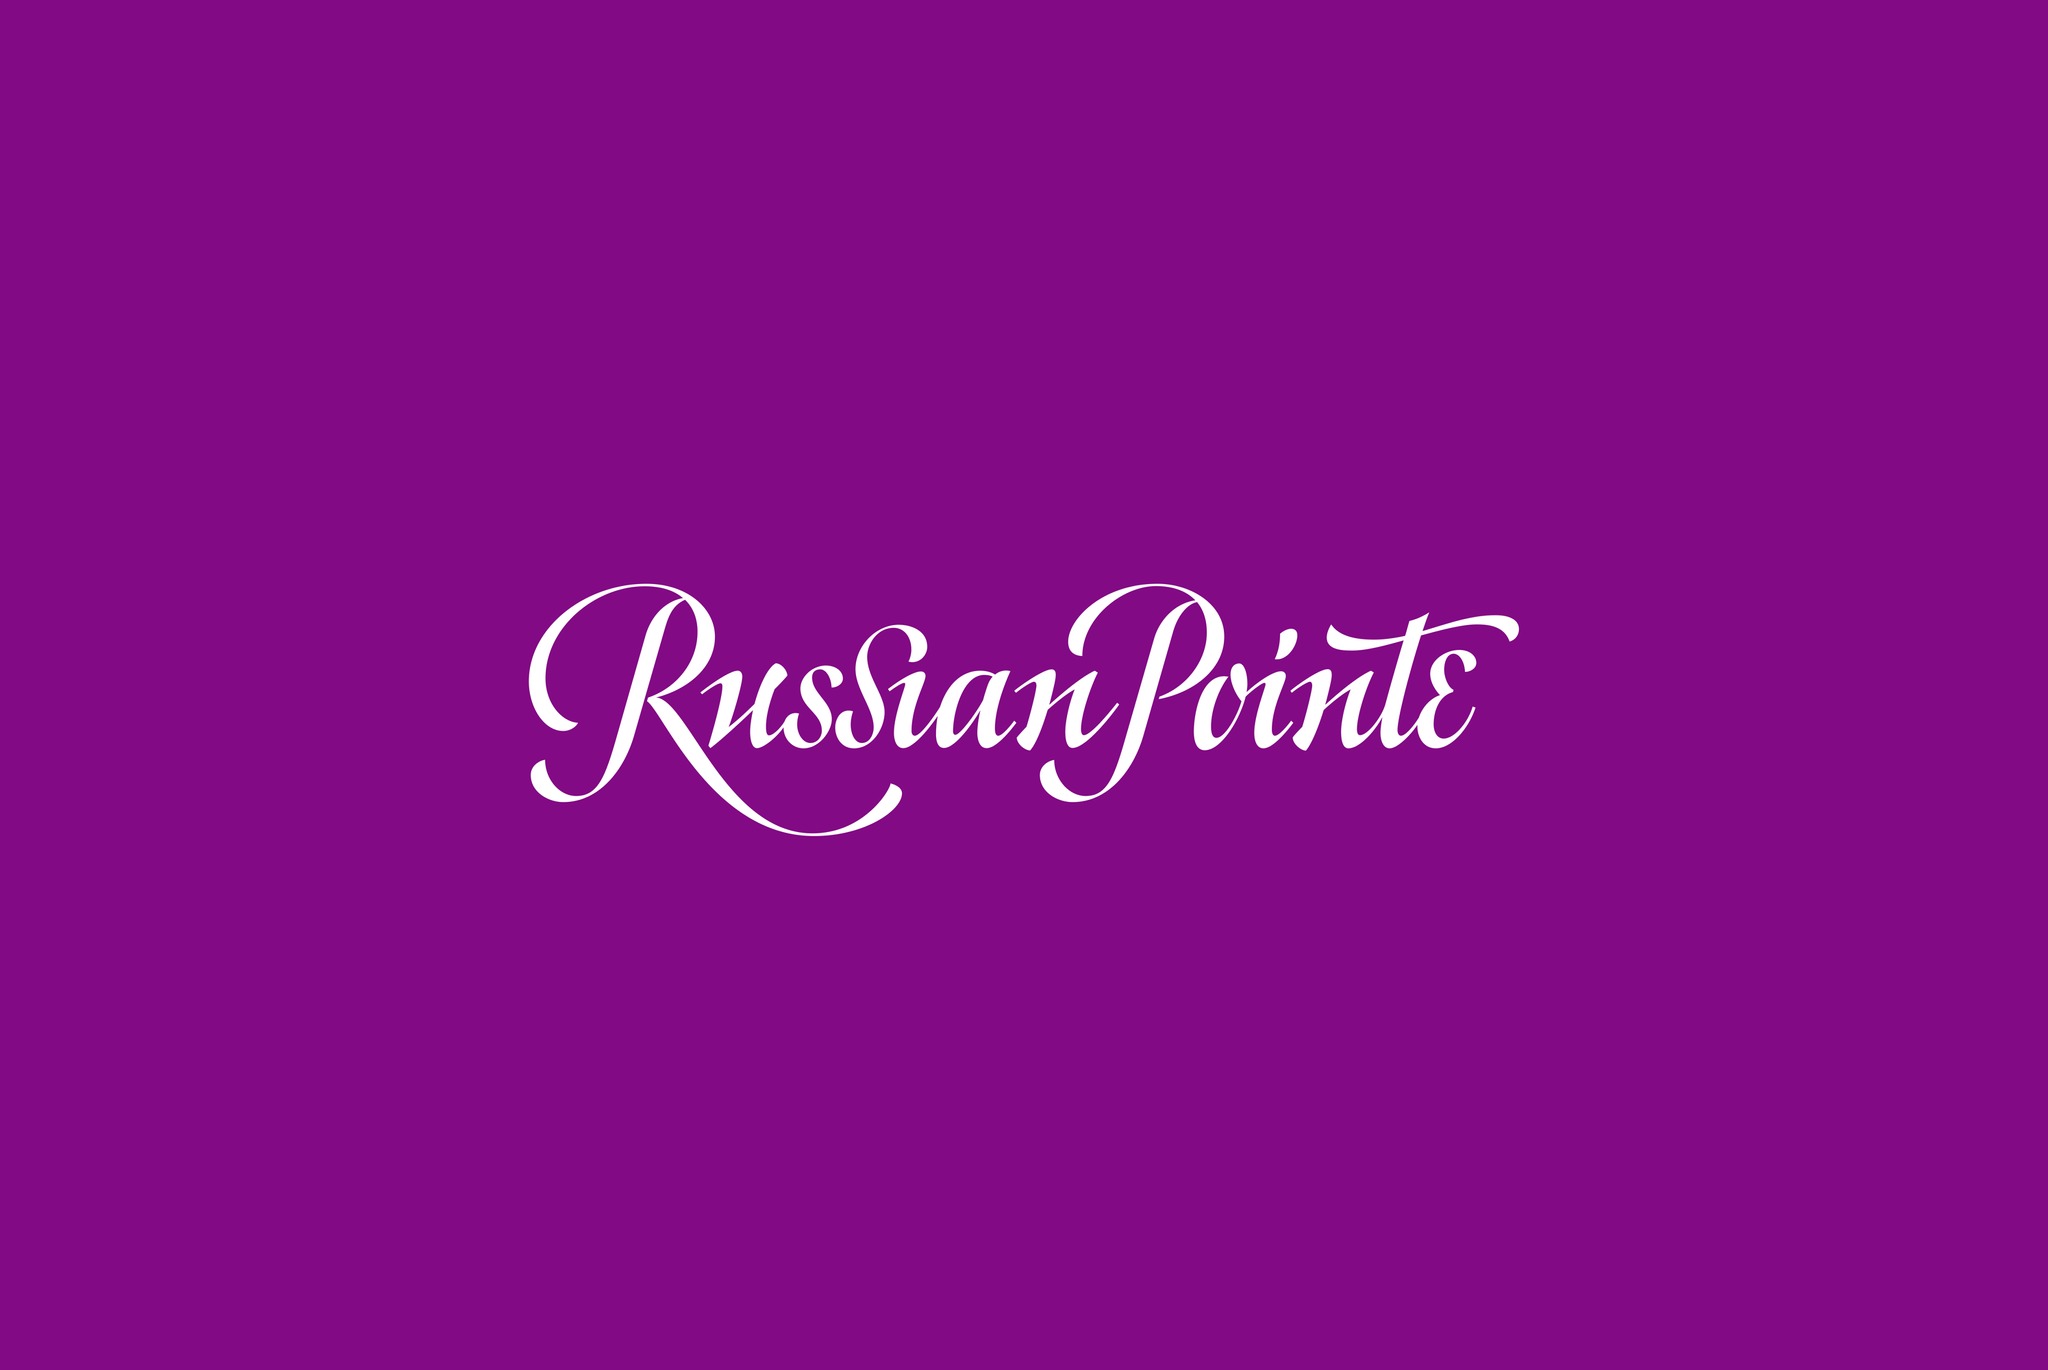 Russian Pointe芭蕾舞用品品牌设计